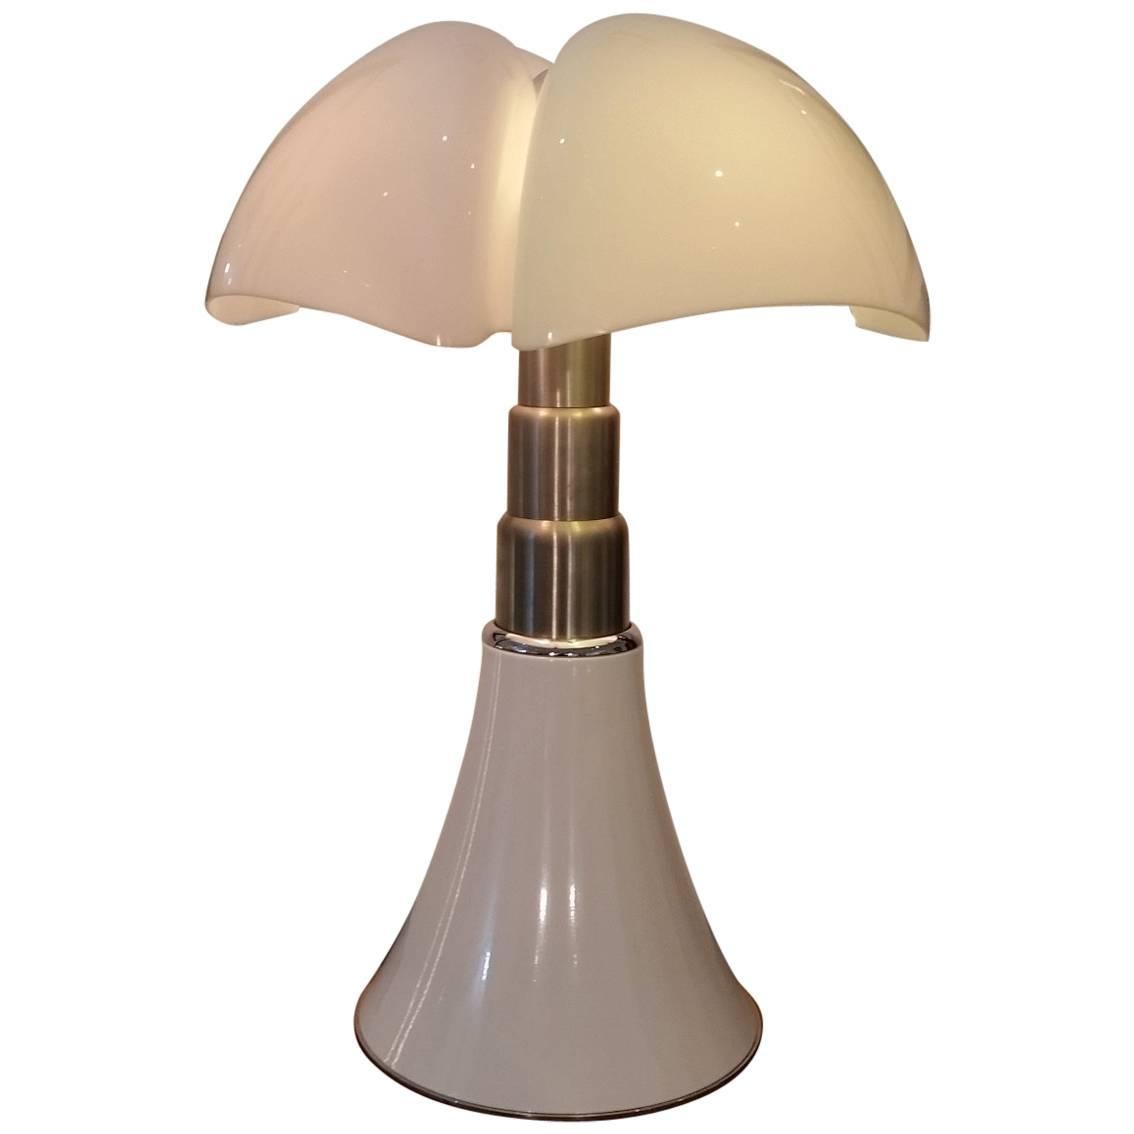 Table Lamp Gae Aulenti "Pipistrello" Martinelli Luce 2014 Edition